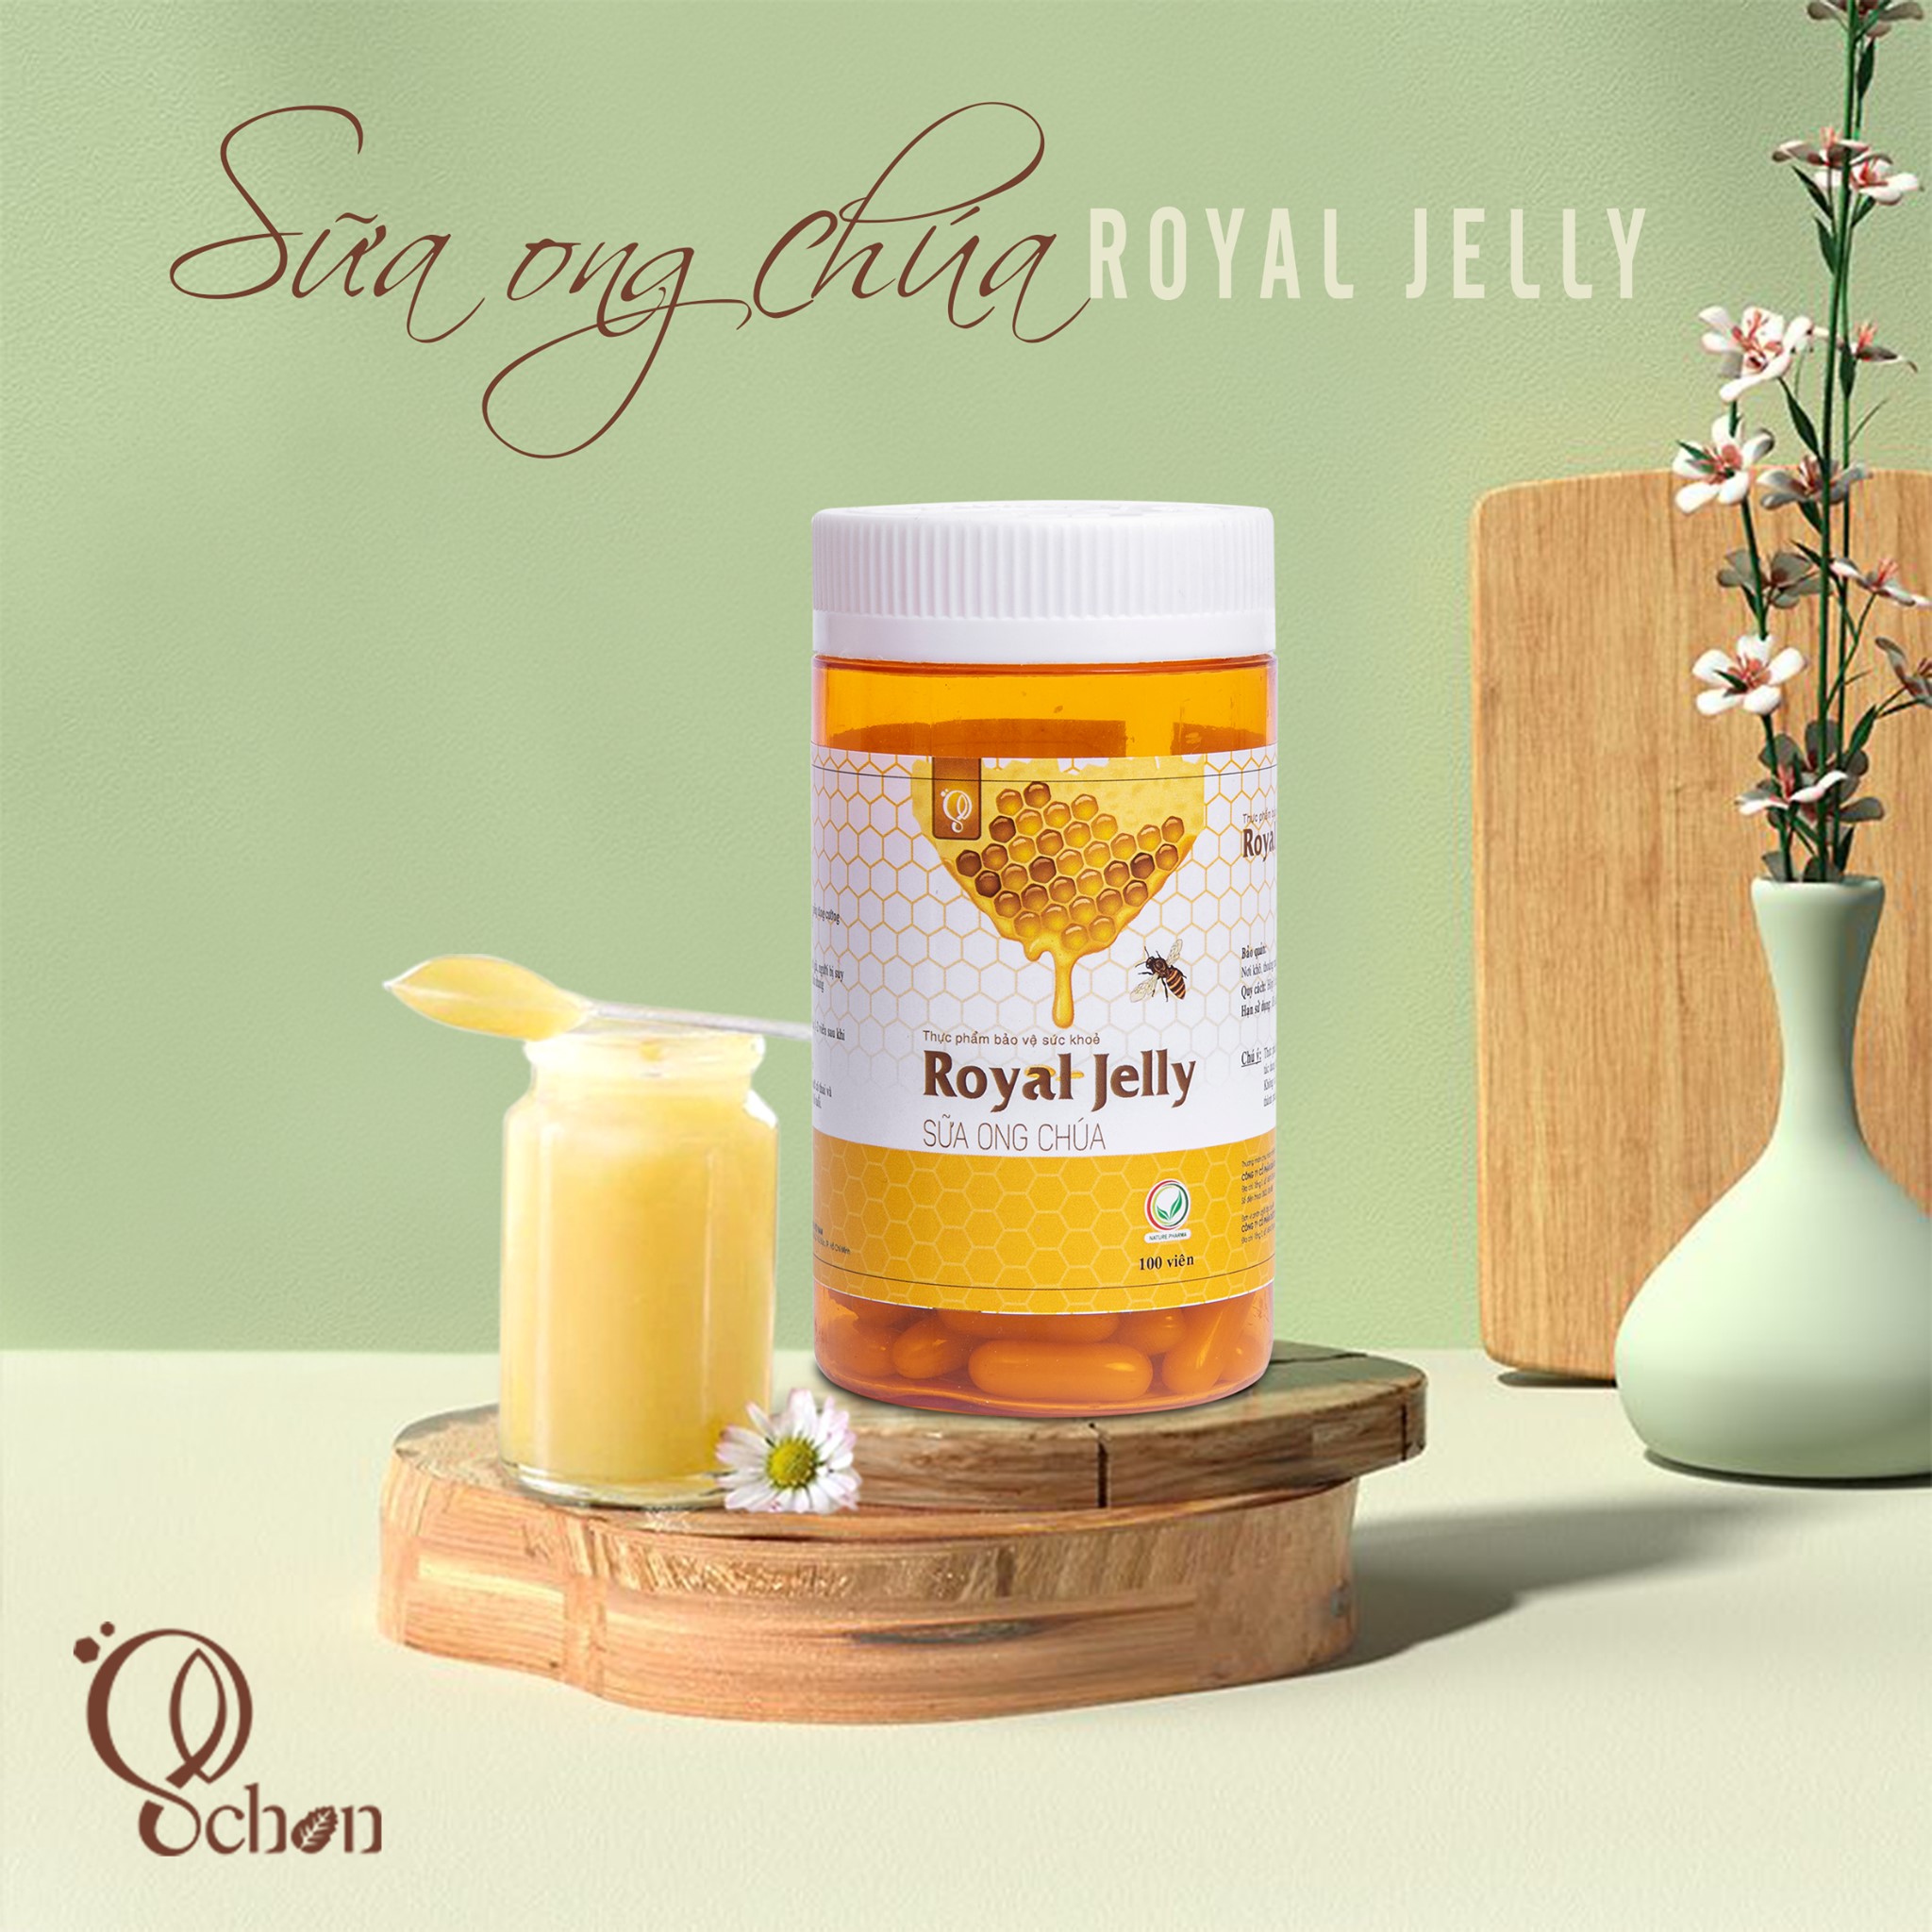 Dứt điểm thâm sạm - mẹ tự tin tỏa sáng với viên sữa ong chúa Jelly Royal